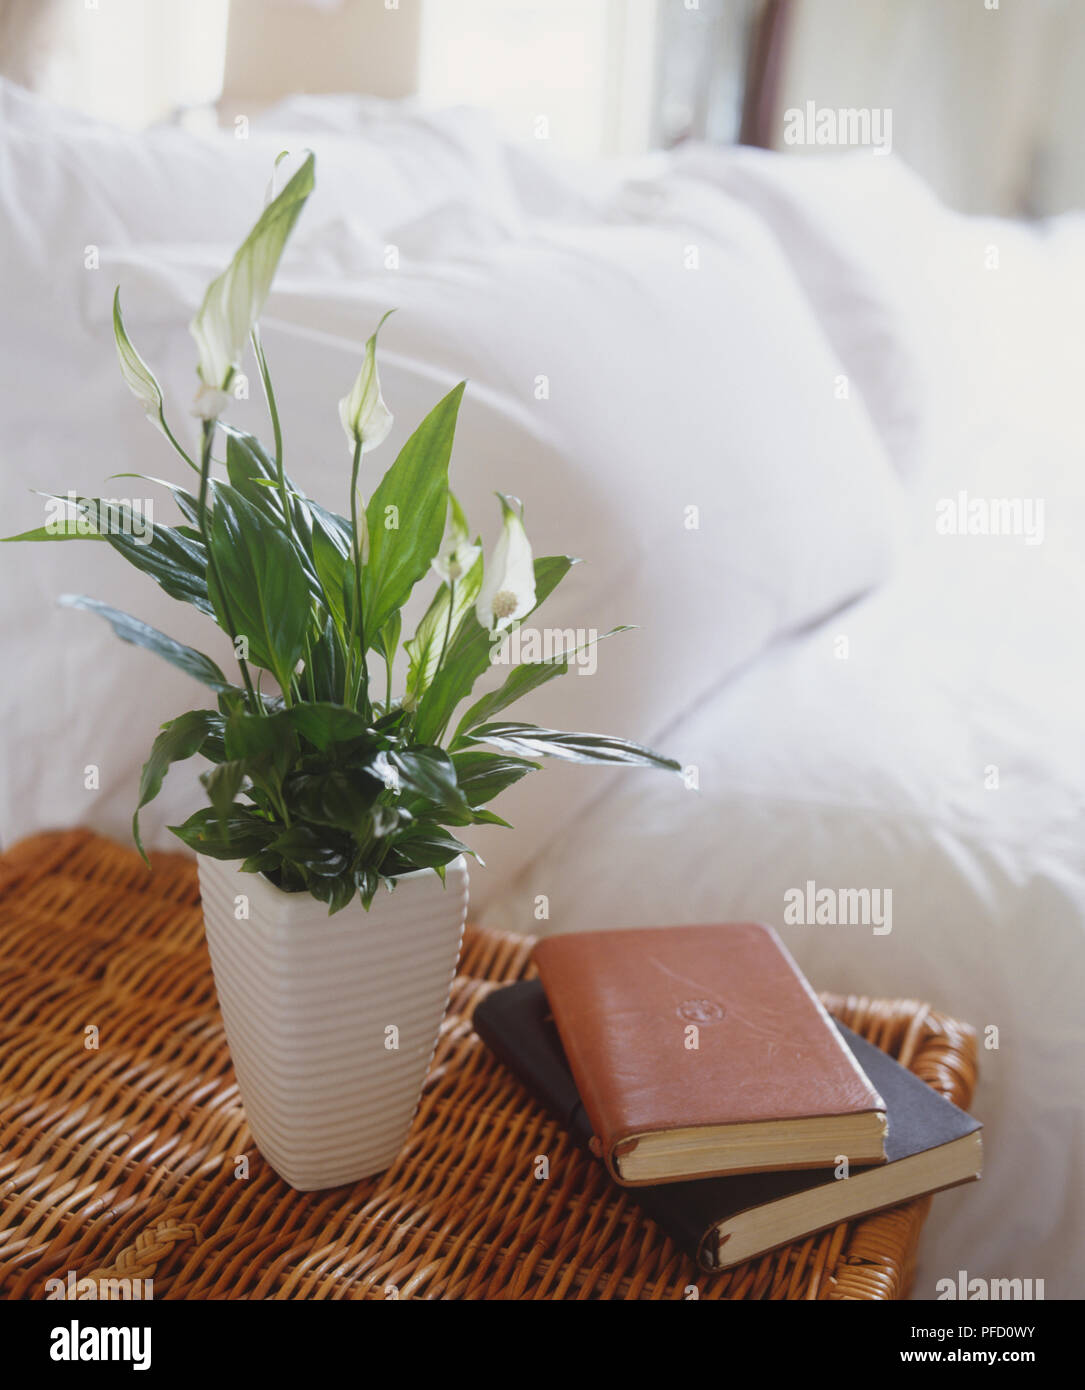 La pace Lily (Spathiphyllum wallisii), a foglia di pianta con i fiori bianchi su esili steli, piantato in alto, increspato white pot, permanente sulla scatola di vimini accanto a due pelle-libri rilegati, letto con piumoni e cuscini in background Foto Stock